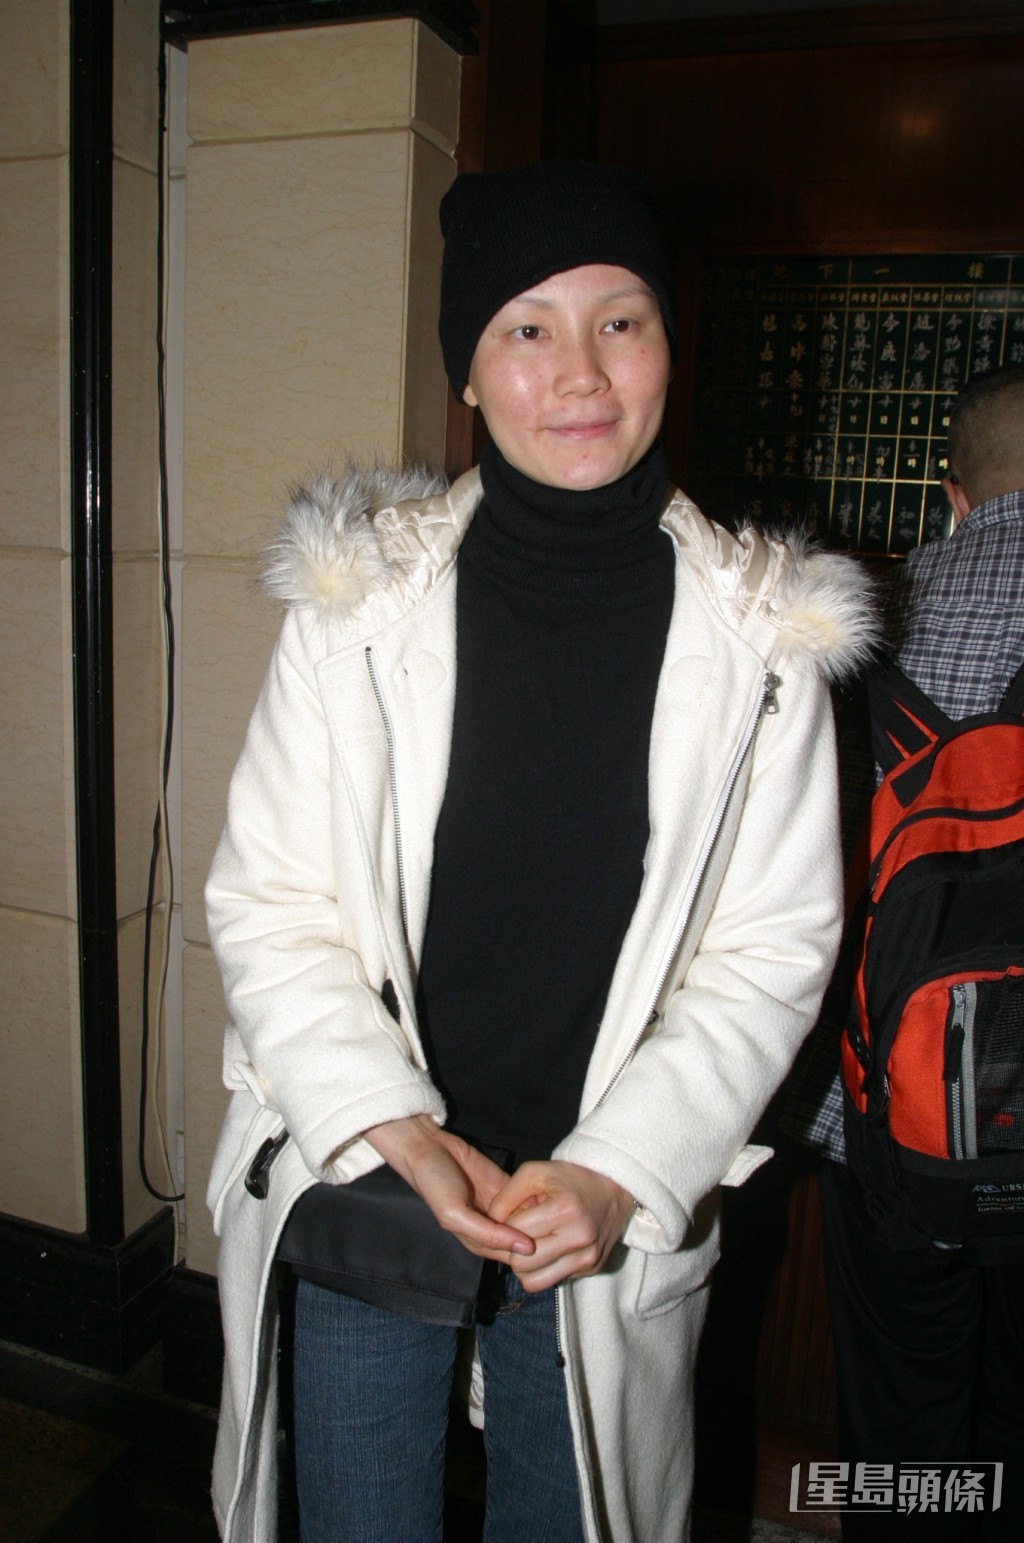 溫裕紅2005年不幸確診患上乳癌，​在化療期間不停嘔吐、脫髮，甚至手腳麻痺又很癢，要冰敷才能抵得住。  ​